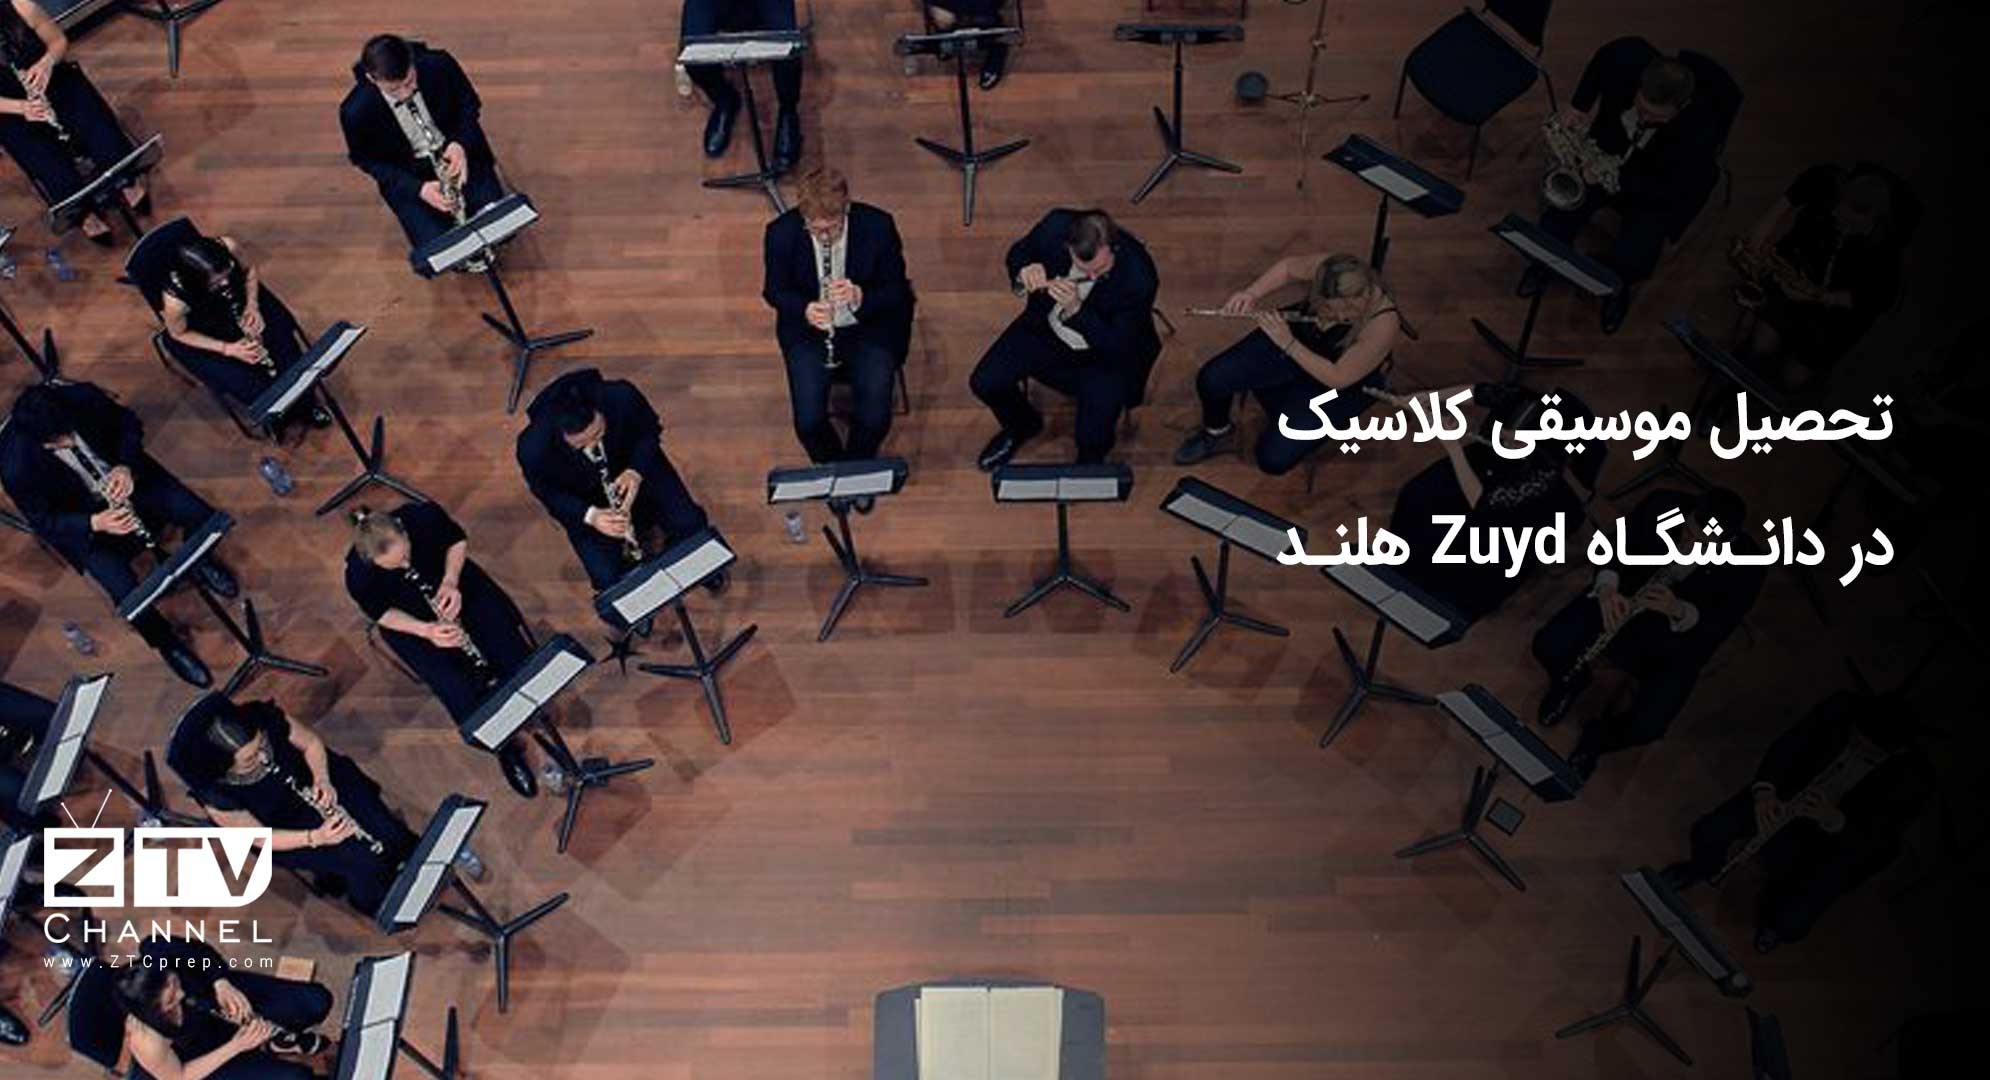 تحصیل موسیقی کلاسیک در دانشگاه Zuyd هلند